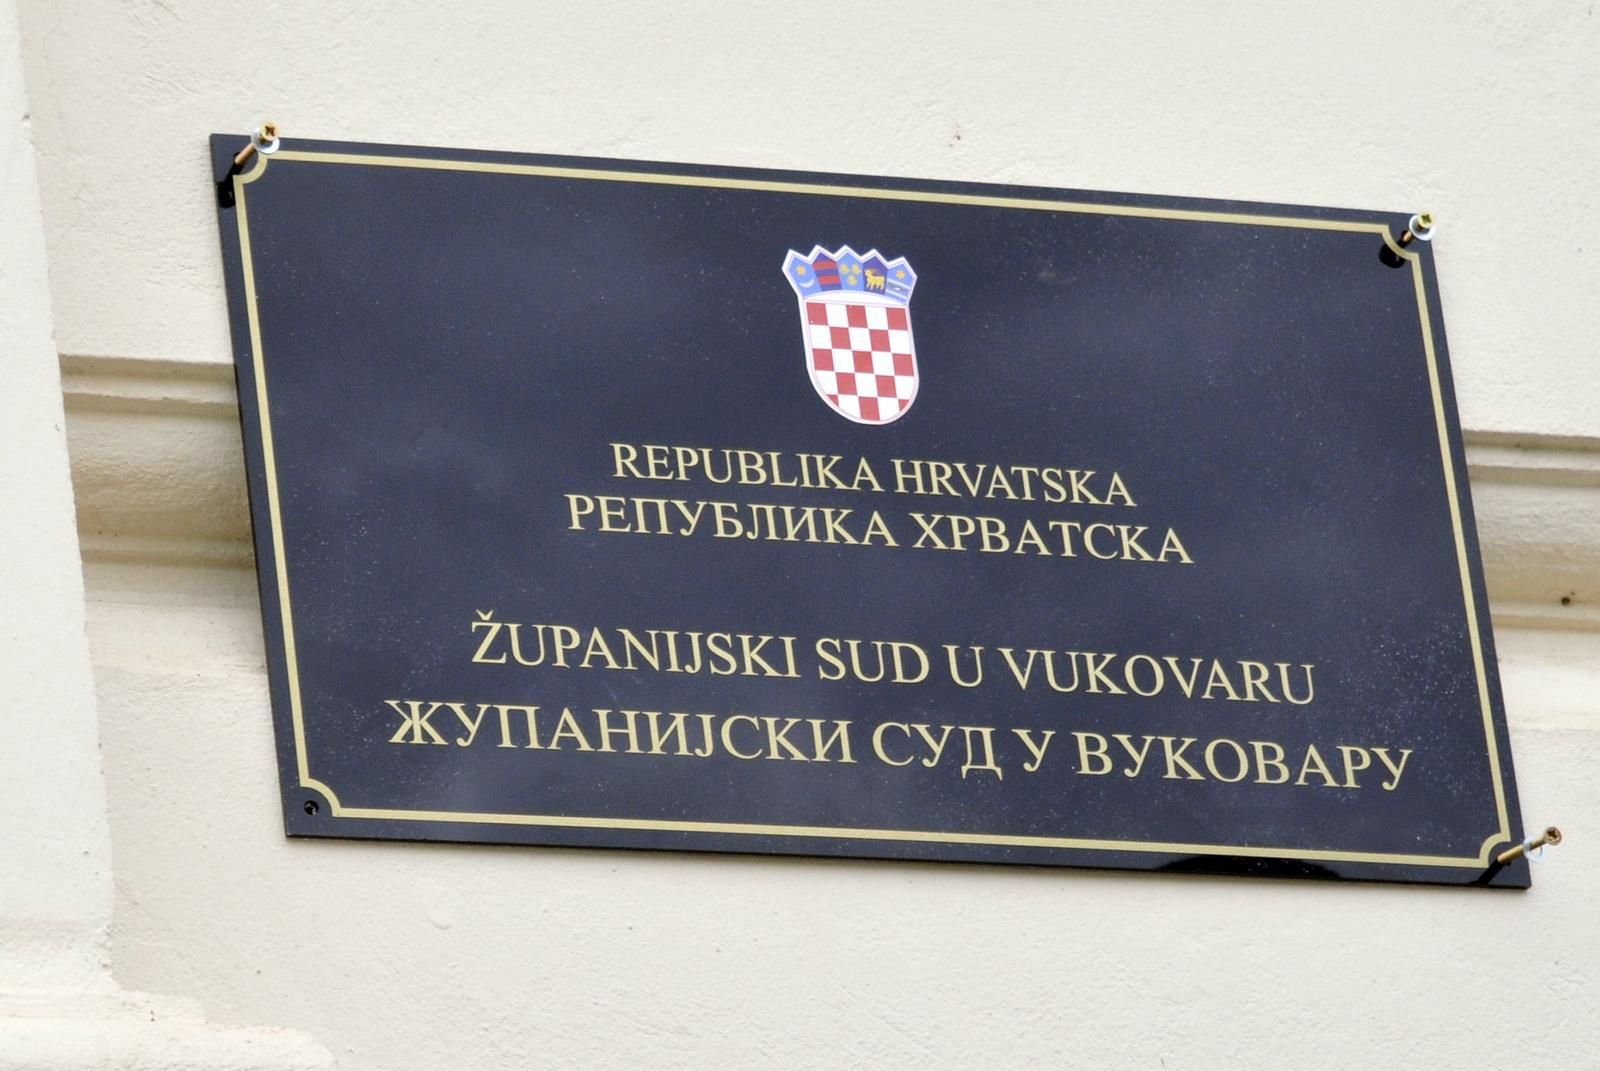 21.10.2013., Vukovar - Na Zupanijski sud u Vukovaru postavljena nova ploca s dvojezicnim natpisom. Ploce su postavljene na vecoj visini tako da se ne mogu skinuti bez koristenja ljestvi.rPhoto: Goran Ferbezar/PIXSELL